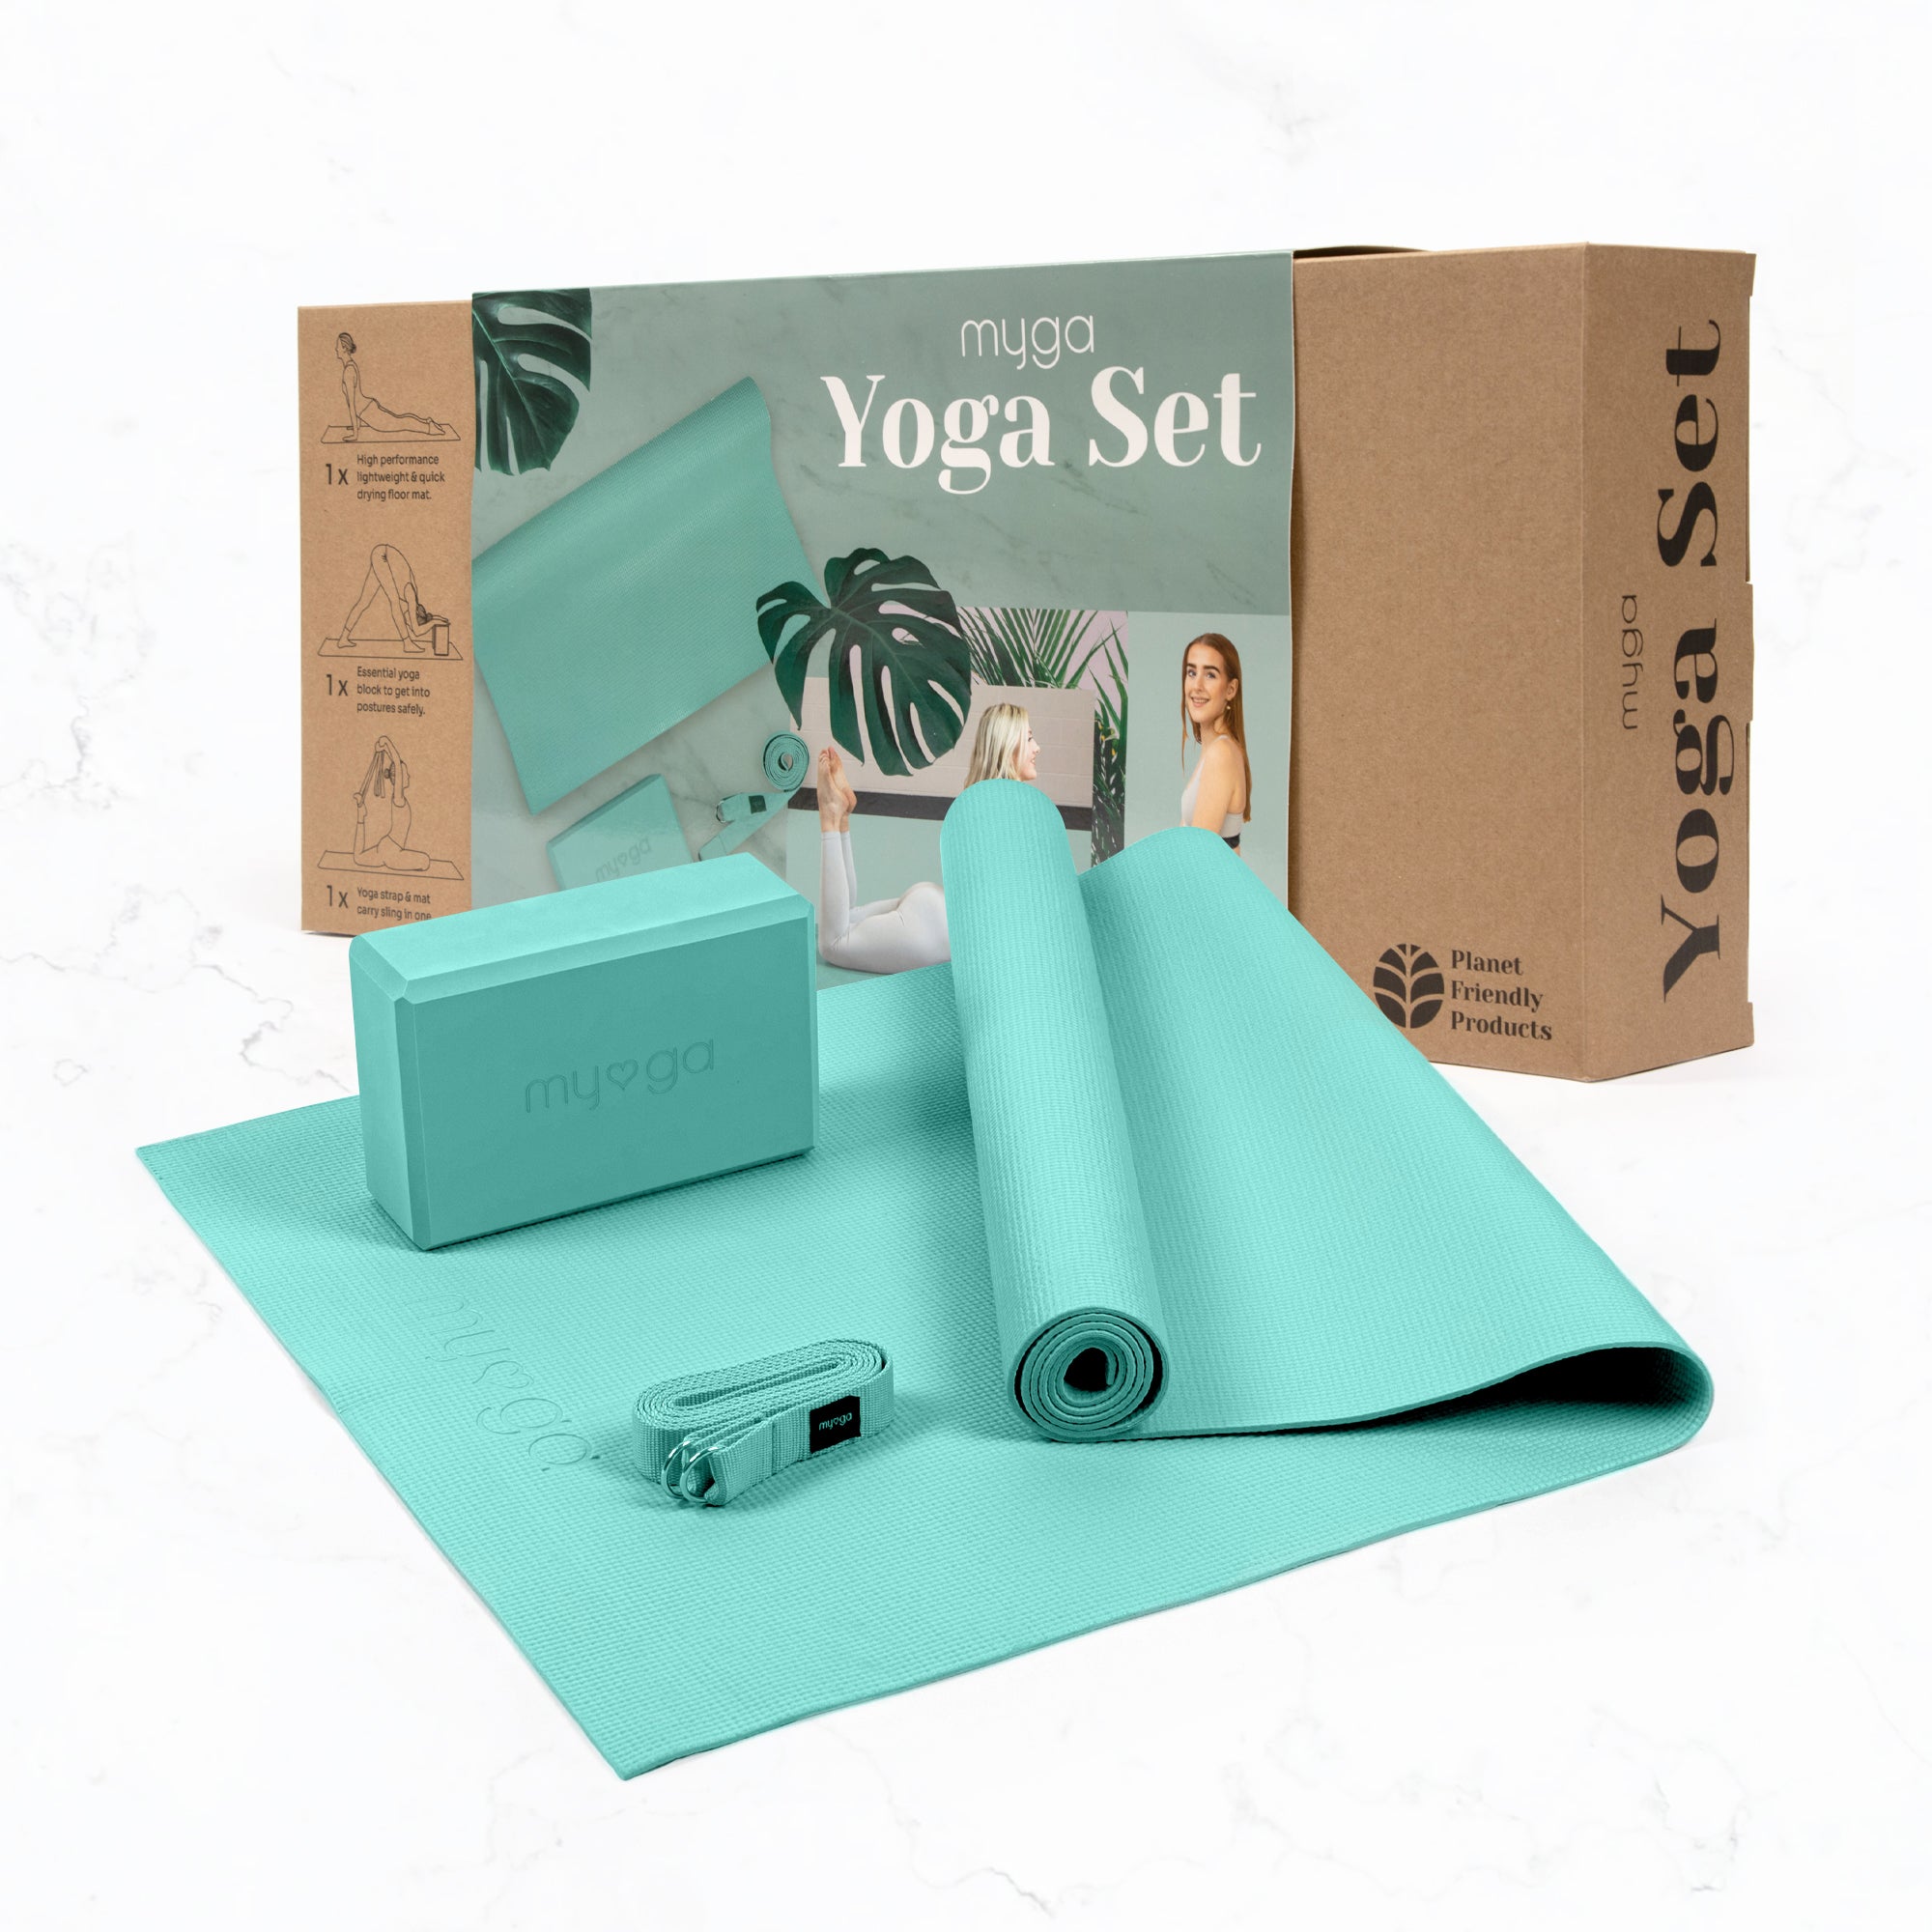 Spri Yoga Starter Kit for Beginners with Sticky Mat, yoga block, 6